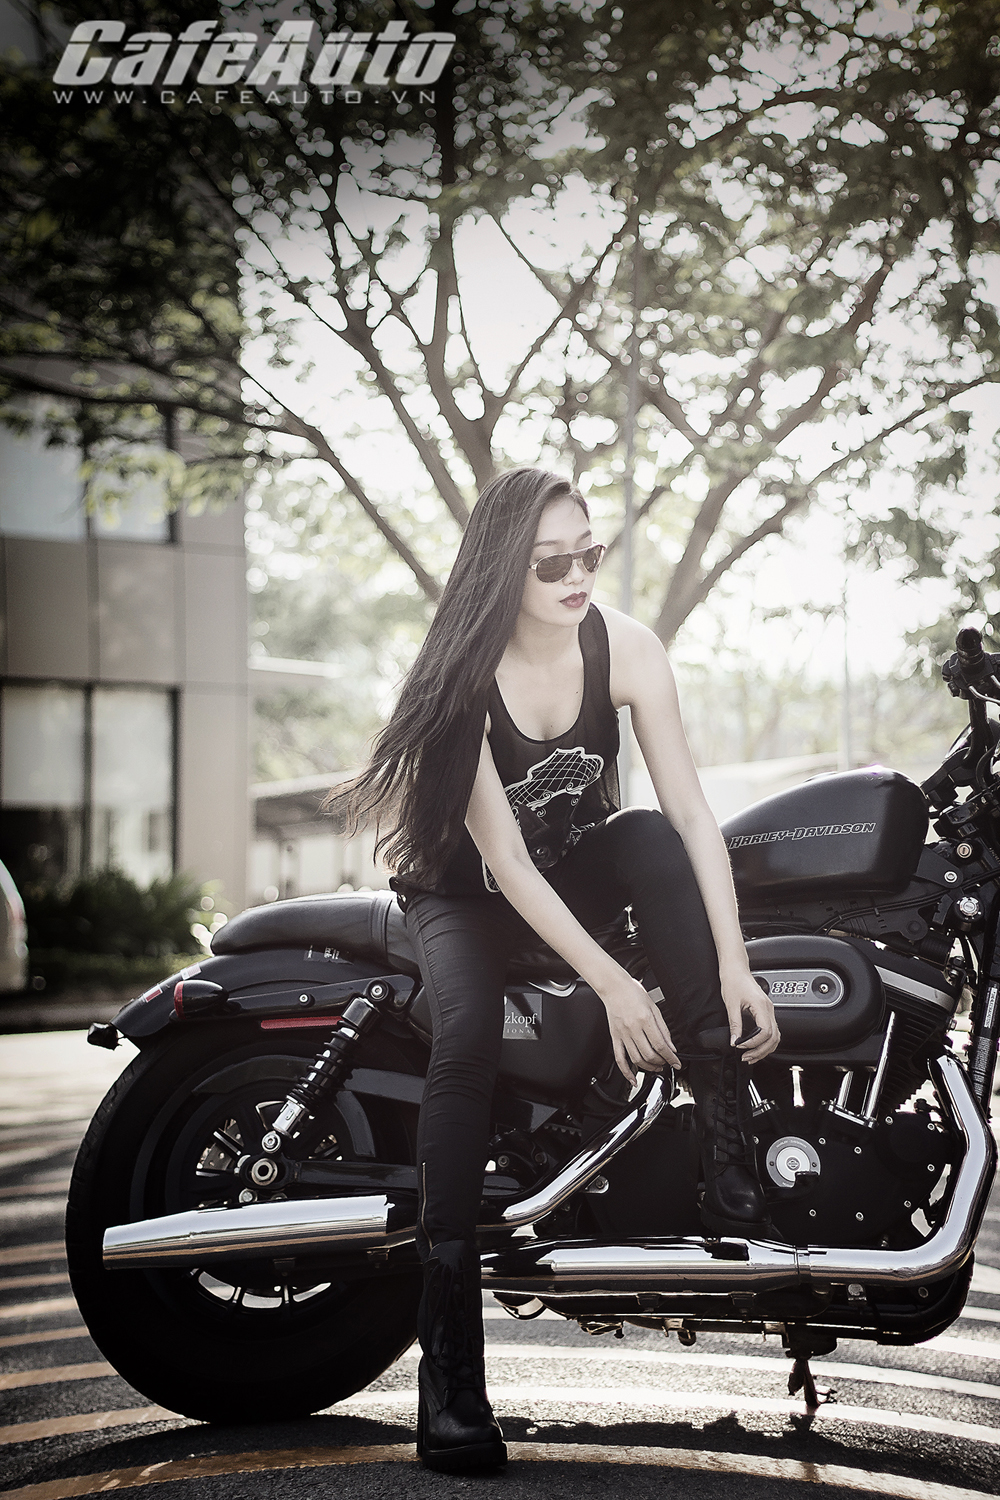 Harley Davidson Sportster Iron manh me ben nguoi dep chan dai - 9